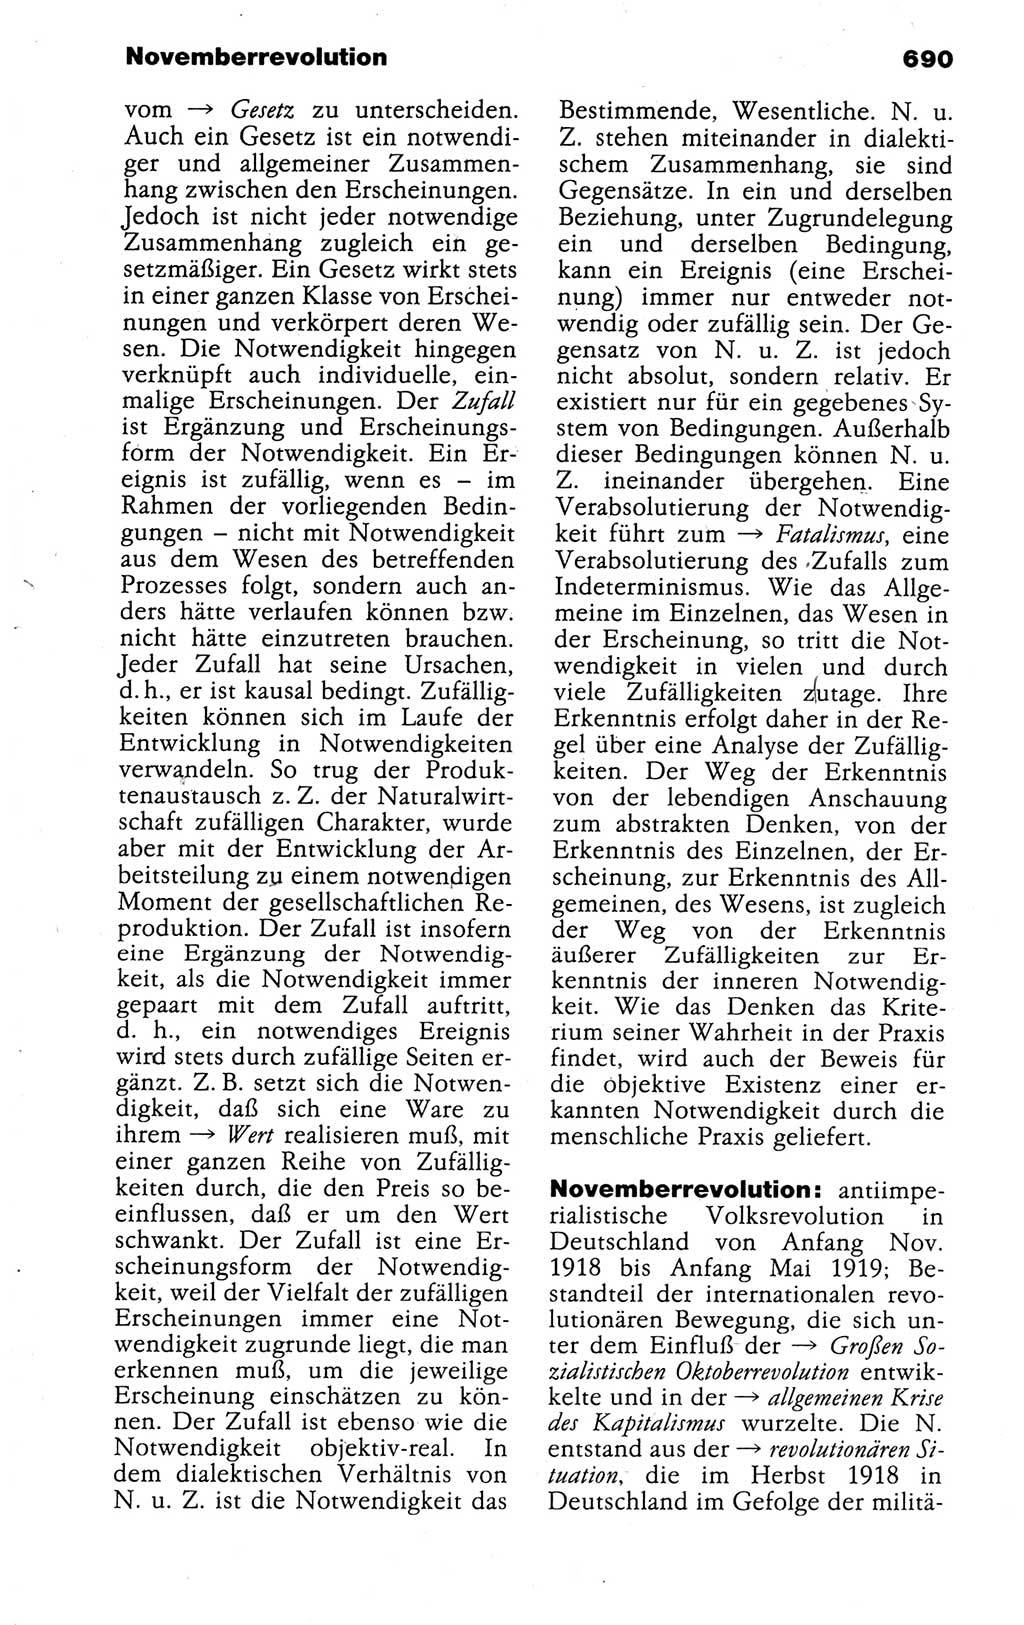 Kleines politisches Wörterbuch [Deutsche Demokratische Republik (DDR)] 1988, Seite 690 (Kl. pol. Wb. DDR 1988, S. 690)